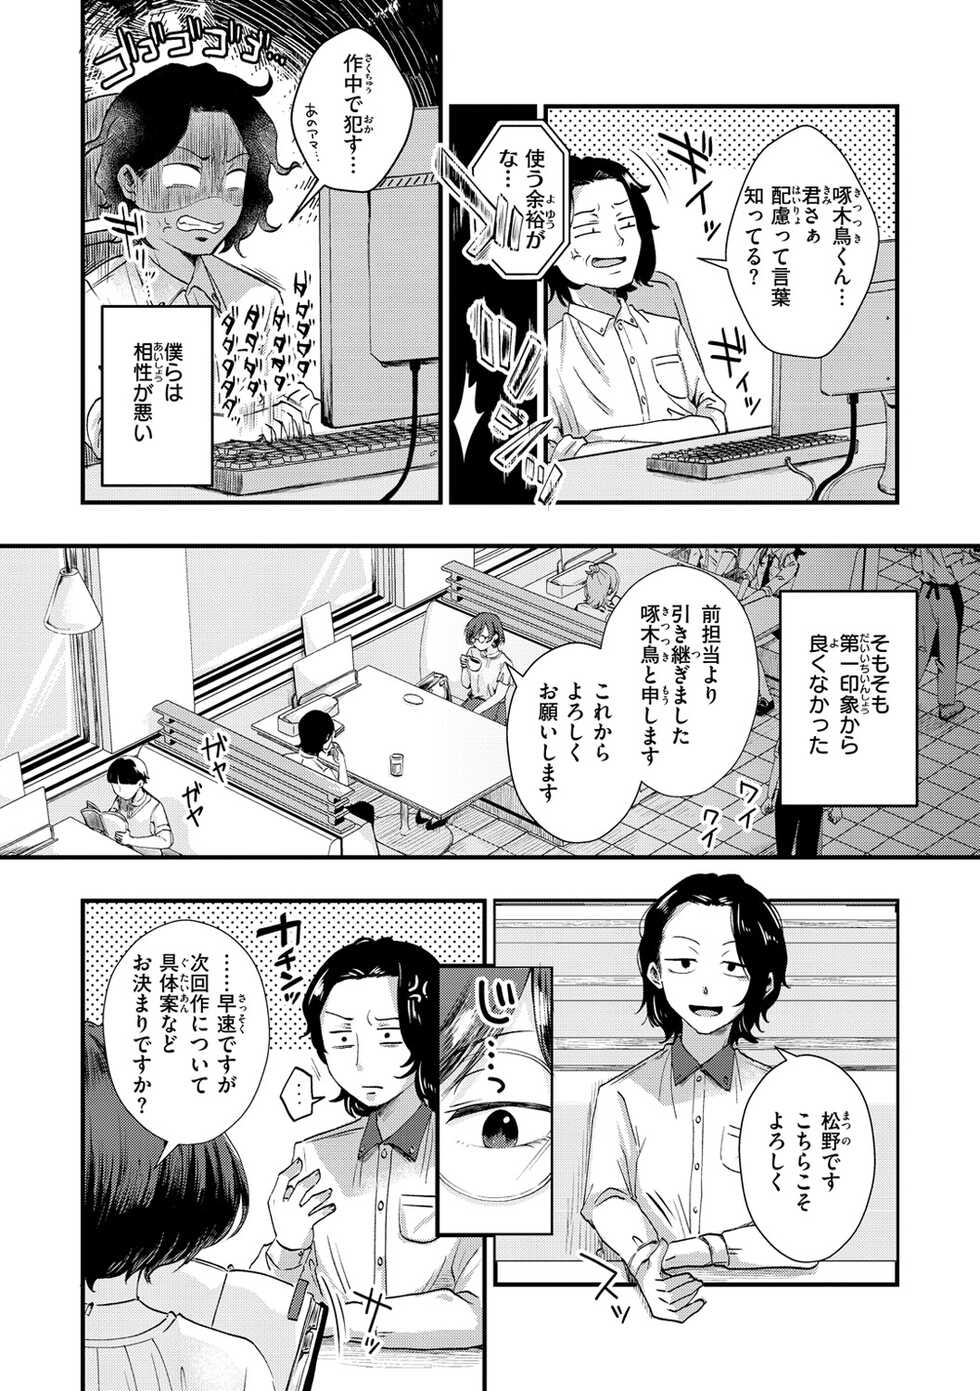 [Enoki] Kekkyoku wa Mesu nano de - She's Just a Pussy. [Digital] - Page 4